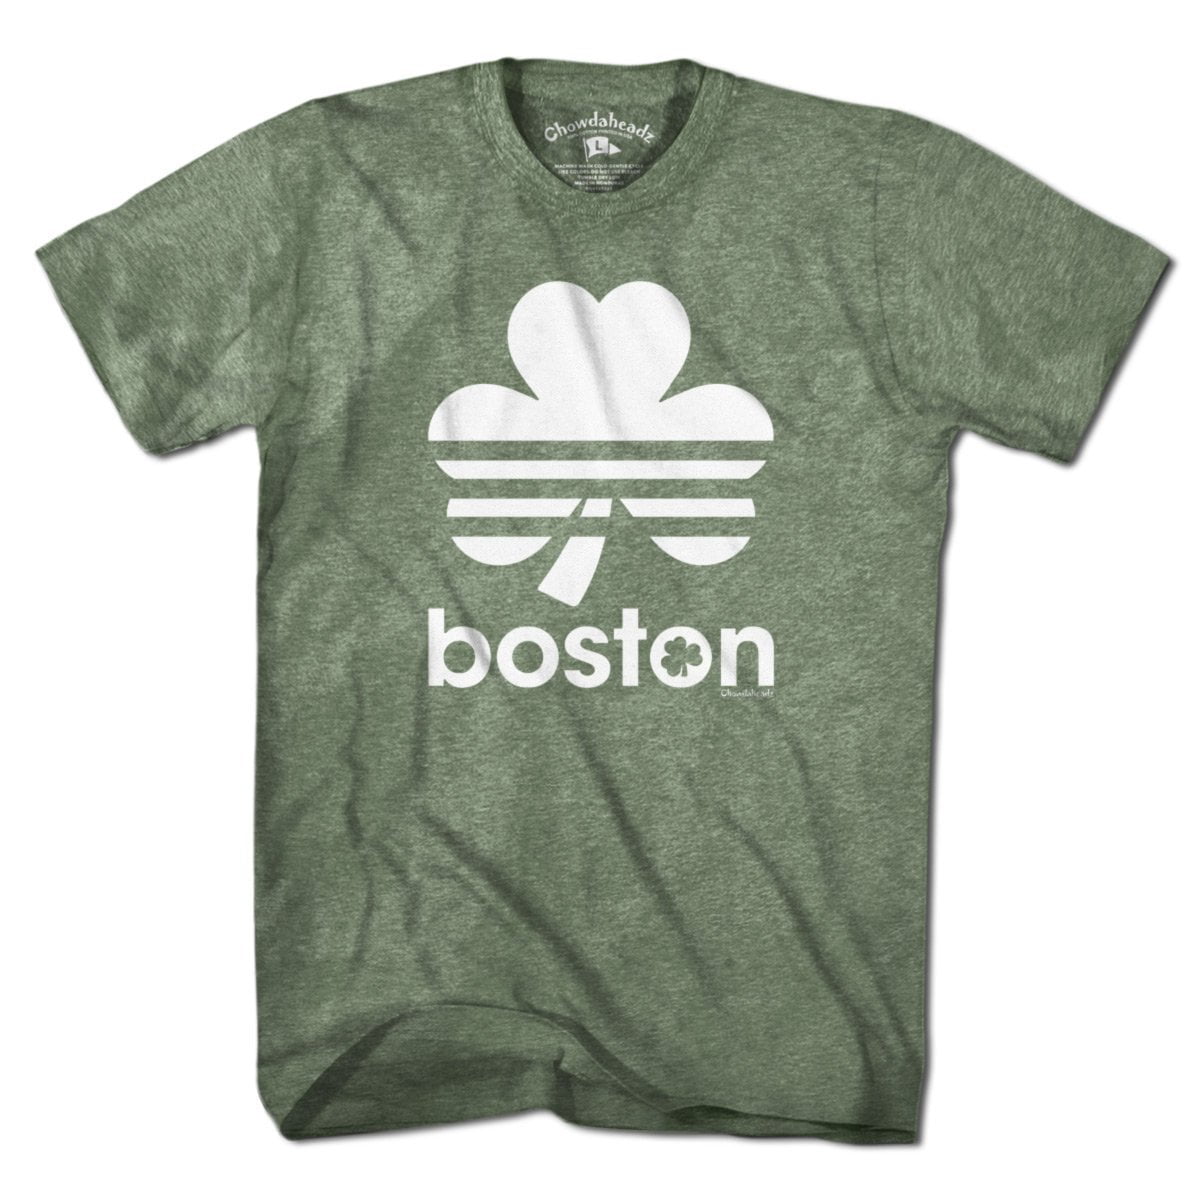 Boston T-shirts